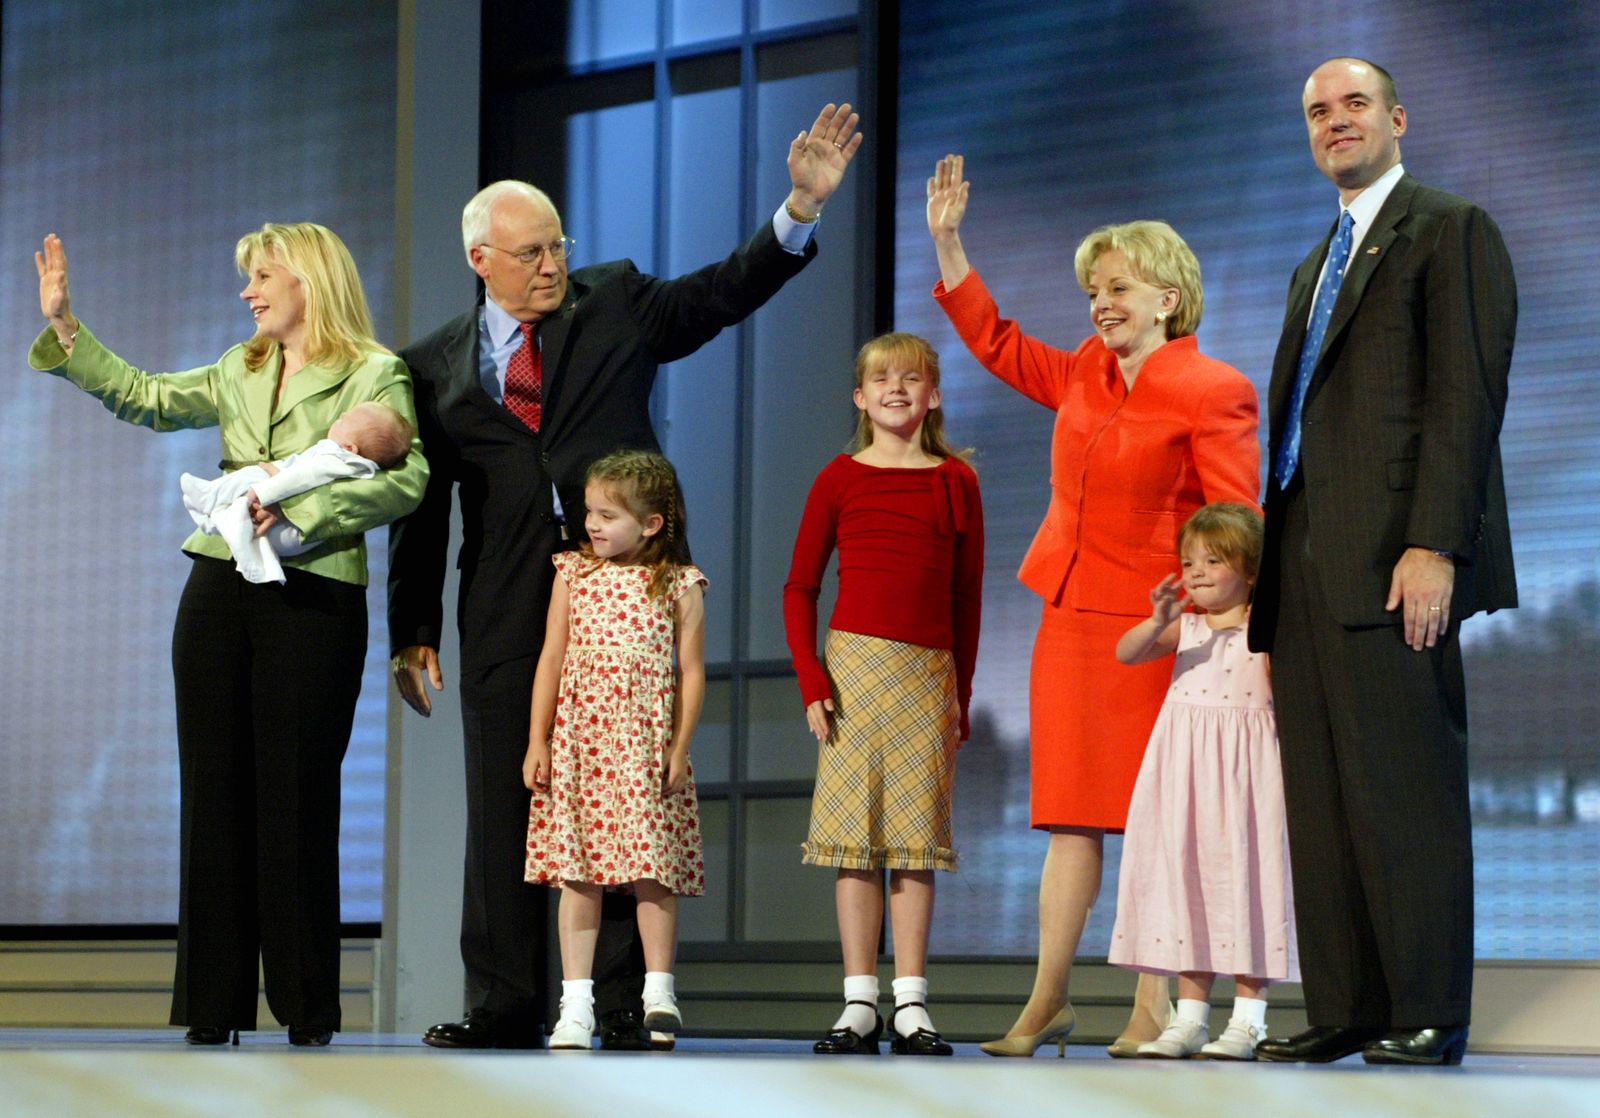 نائب الرئيس الأميركي ديك تشيني وبجواره زوجته لين، ونجلته ليز وأولادها وزوجها فيليب بيري أثناء مؤتمر الحزب الجمهوري - ماديسون سكوير، نيويورك -  1 سبتمبر 2004 - REUTERS